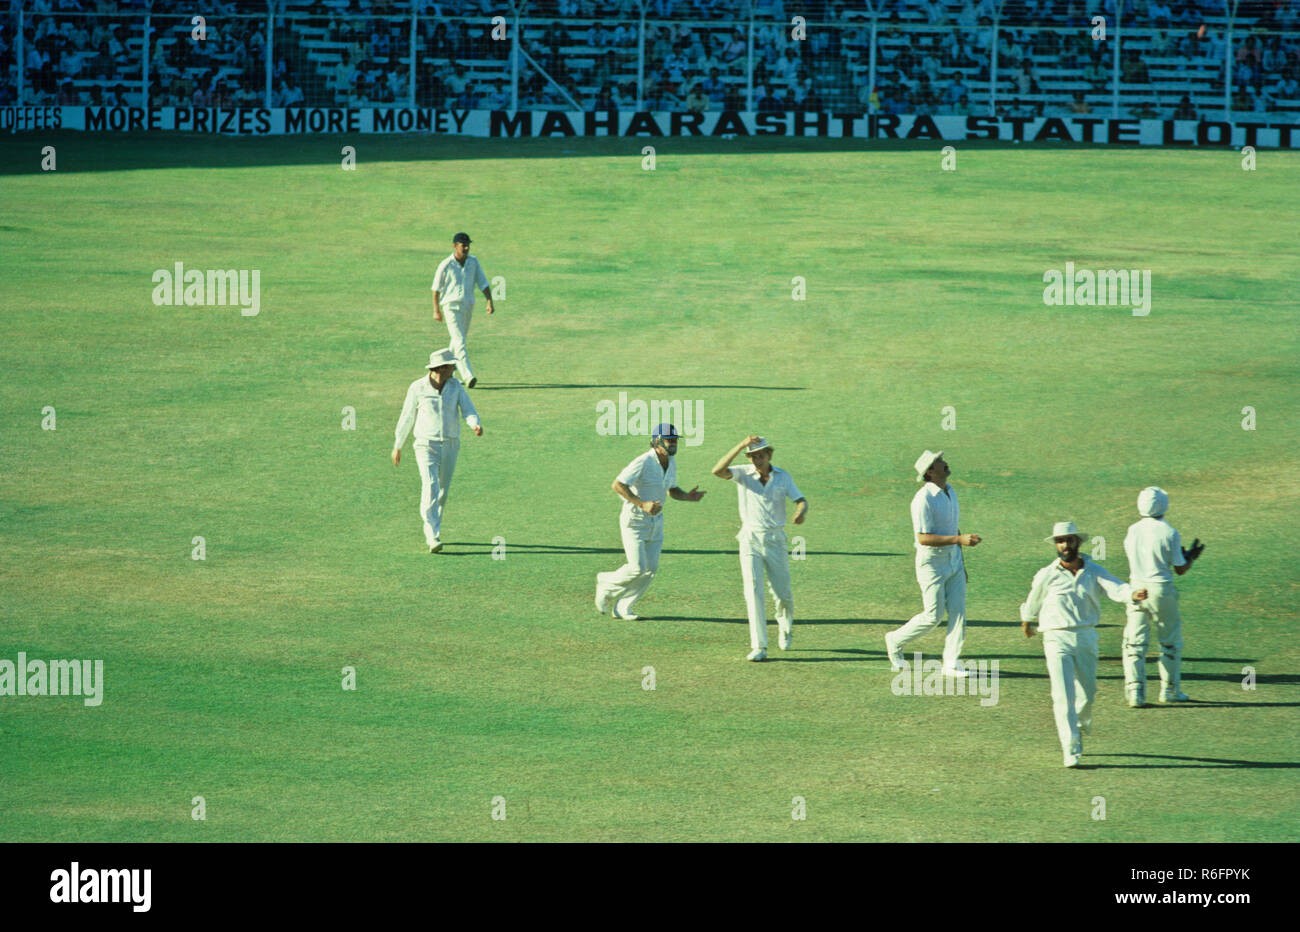 Heureux les joueurs anglais sur l'obtention d'un guichet - Inde - Angleterre match de cricket Wankhede Stadium, Bombay, Maharashtra, Inde Février 1980 Banque D'Images